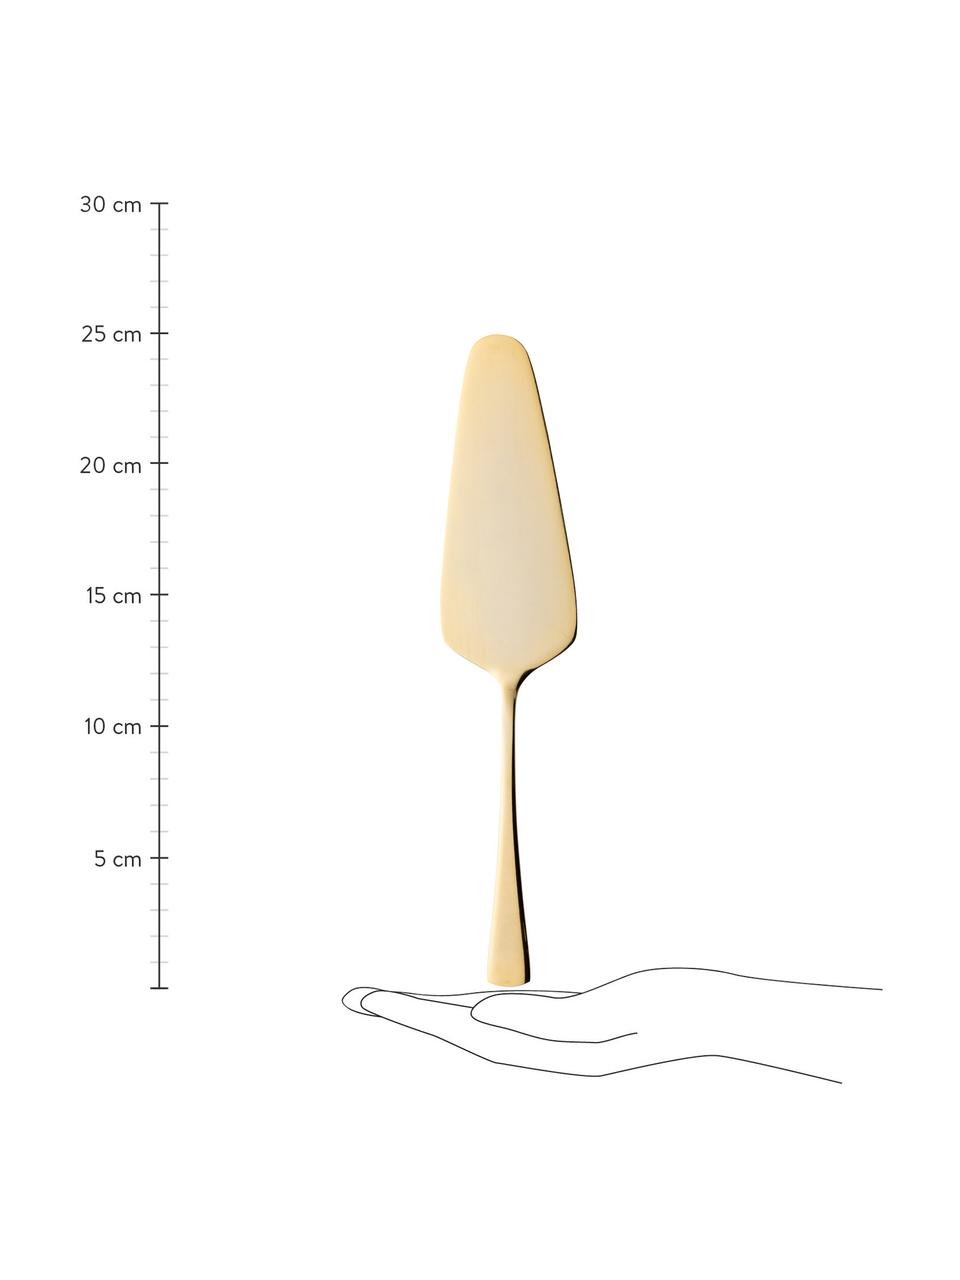 Tortenheber-Set Matera in Gold, 2-teilig, Edelstahl

Das Besteck ist aus Edelstahl gefertigt. Somit ist es langlebig, rostet nicht und ist resistent gegen Bakterien., Goldfarben, Set mit verschiedenen Größen